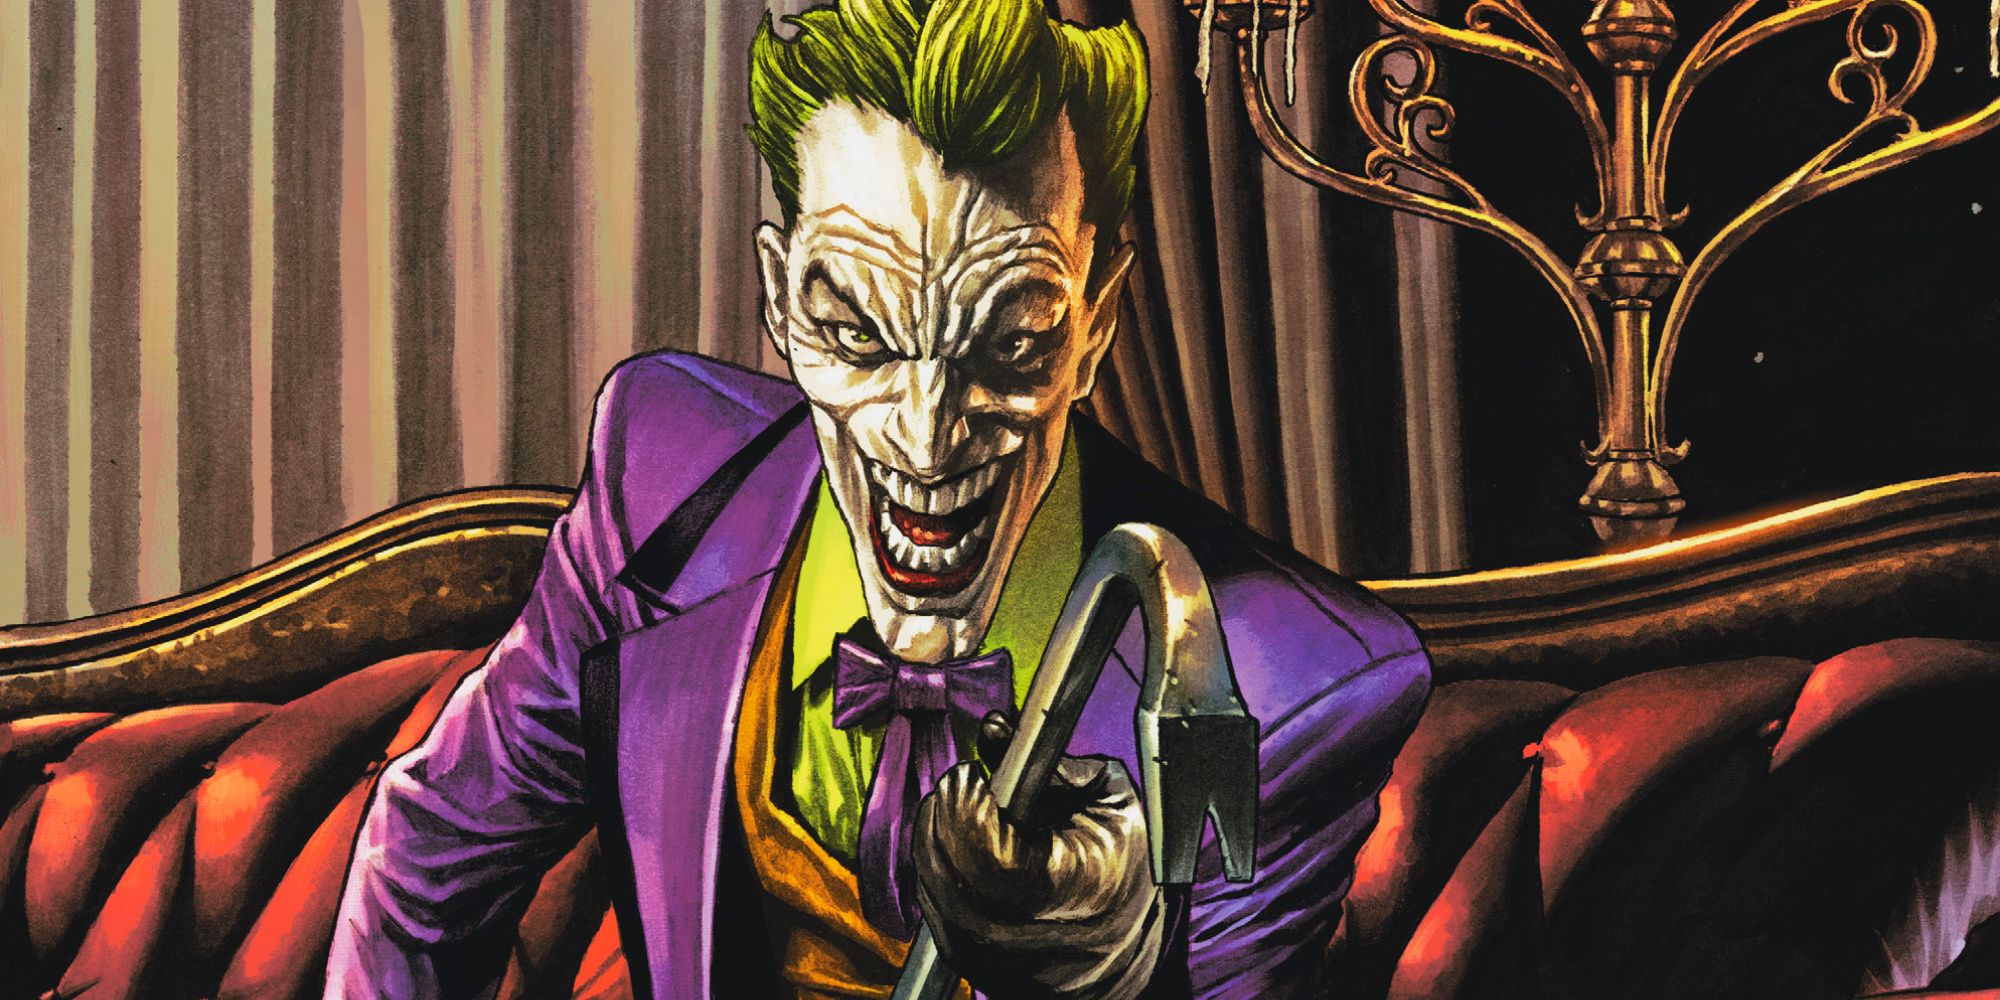 The Joker holding a crowbar